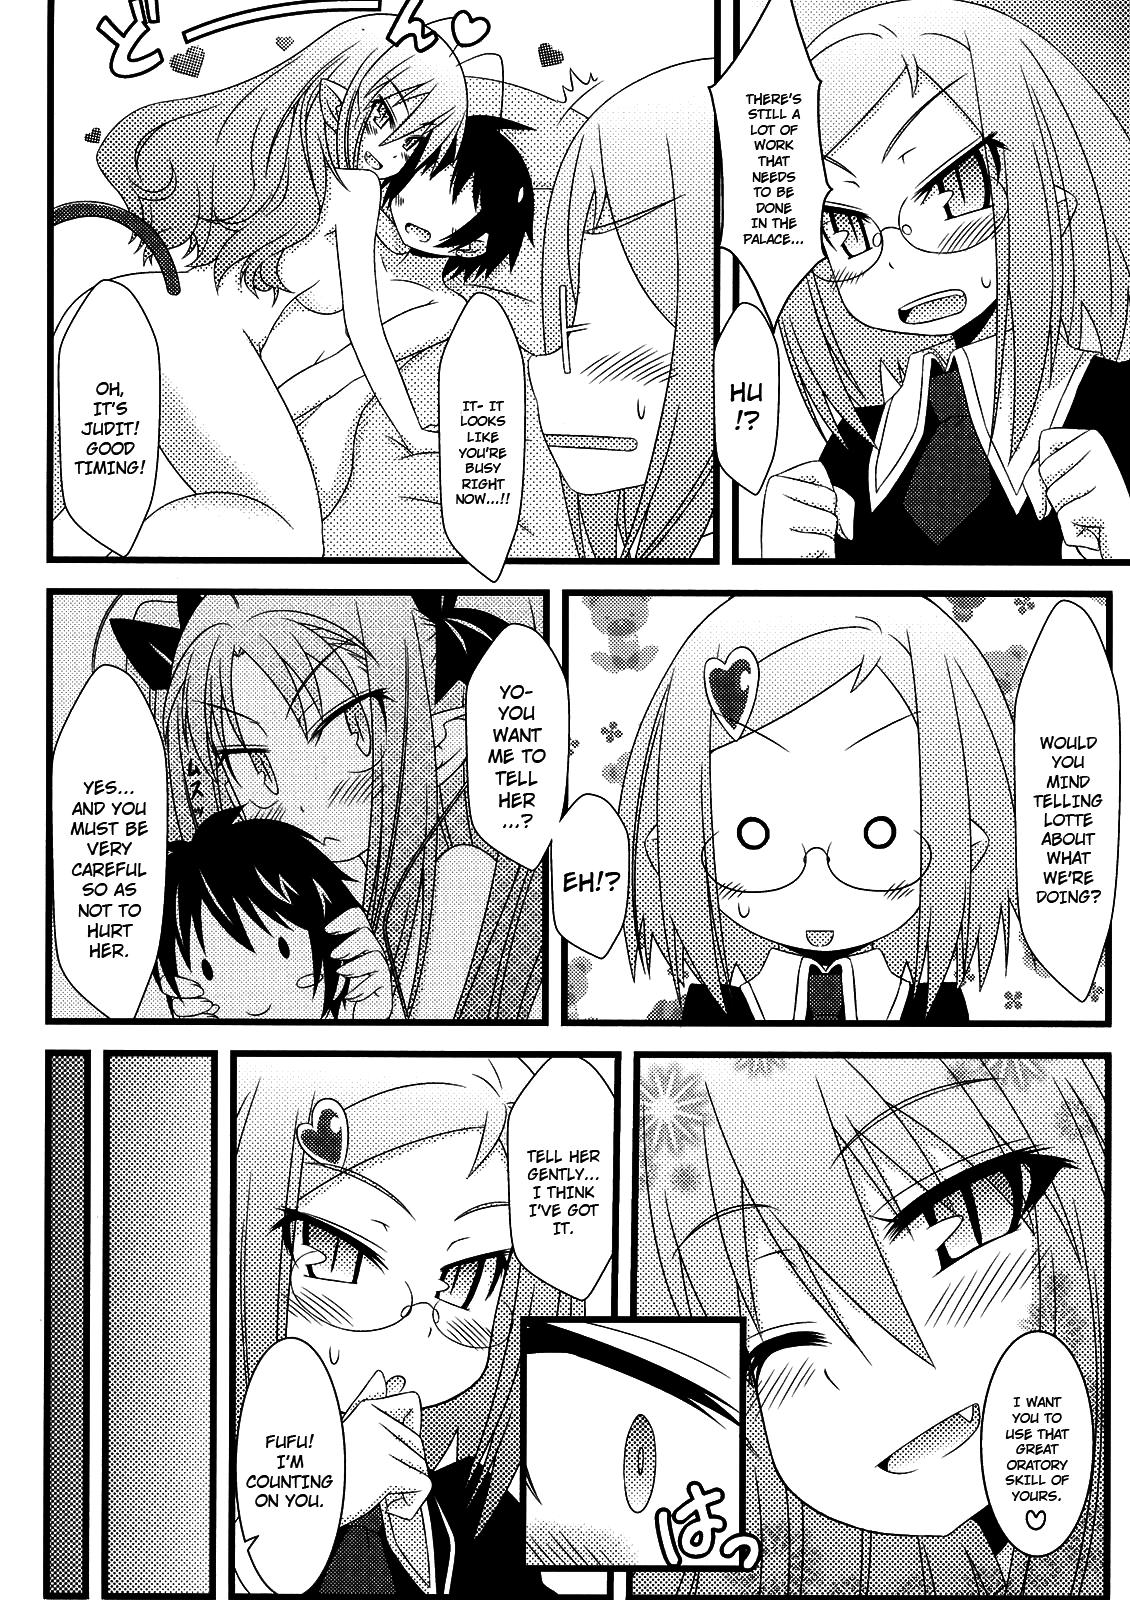 Casada Hajimete no Omocha! - Lotte no omocha Desi - Page 11